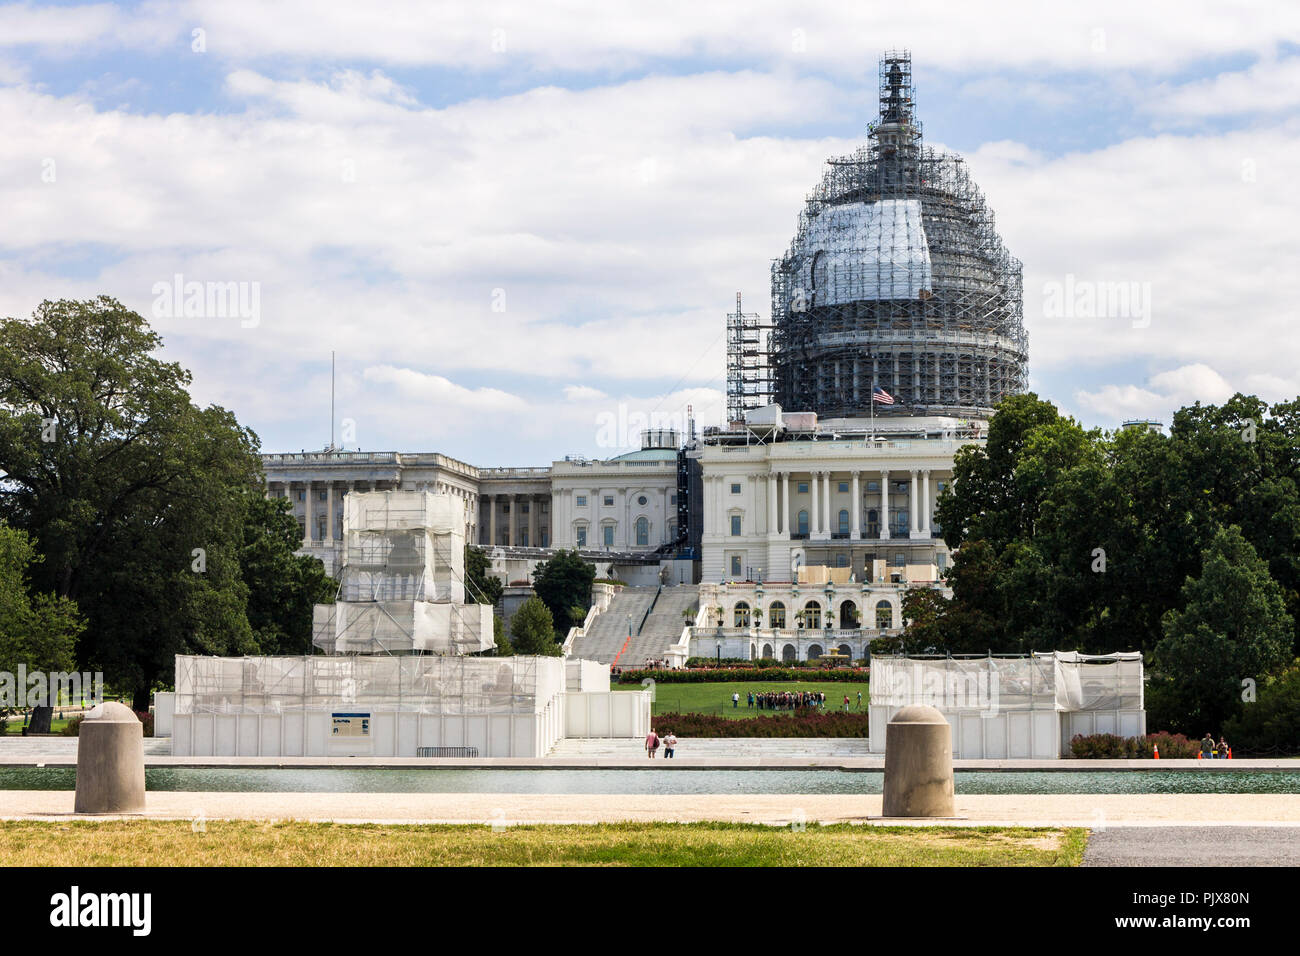 Washington, D.C. Le United States Capitol, siège du Congrès des États-Unis, et le siège de la branche législative du gouvernement fédéral Banque D'Images